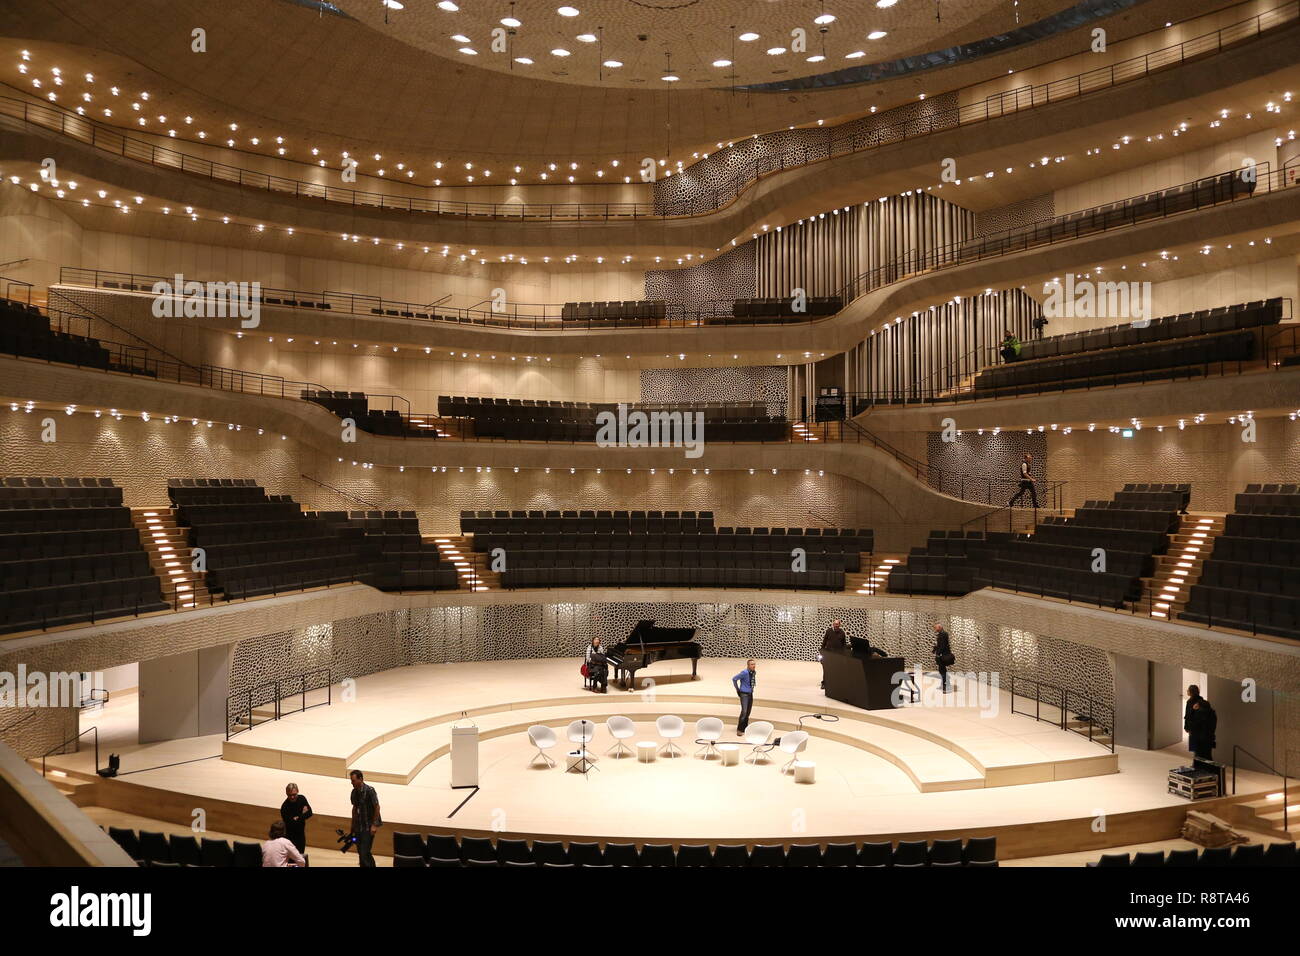 Elbphilharmonie Blick auf die Bühne und die hinteren Ränge Stock Photo